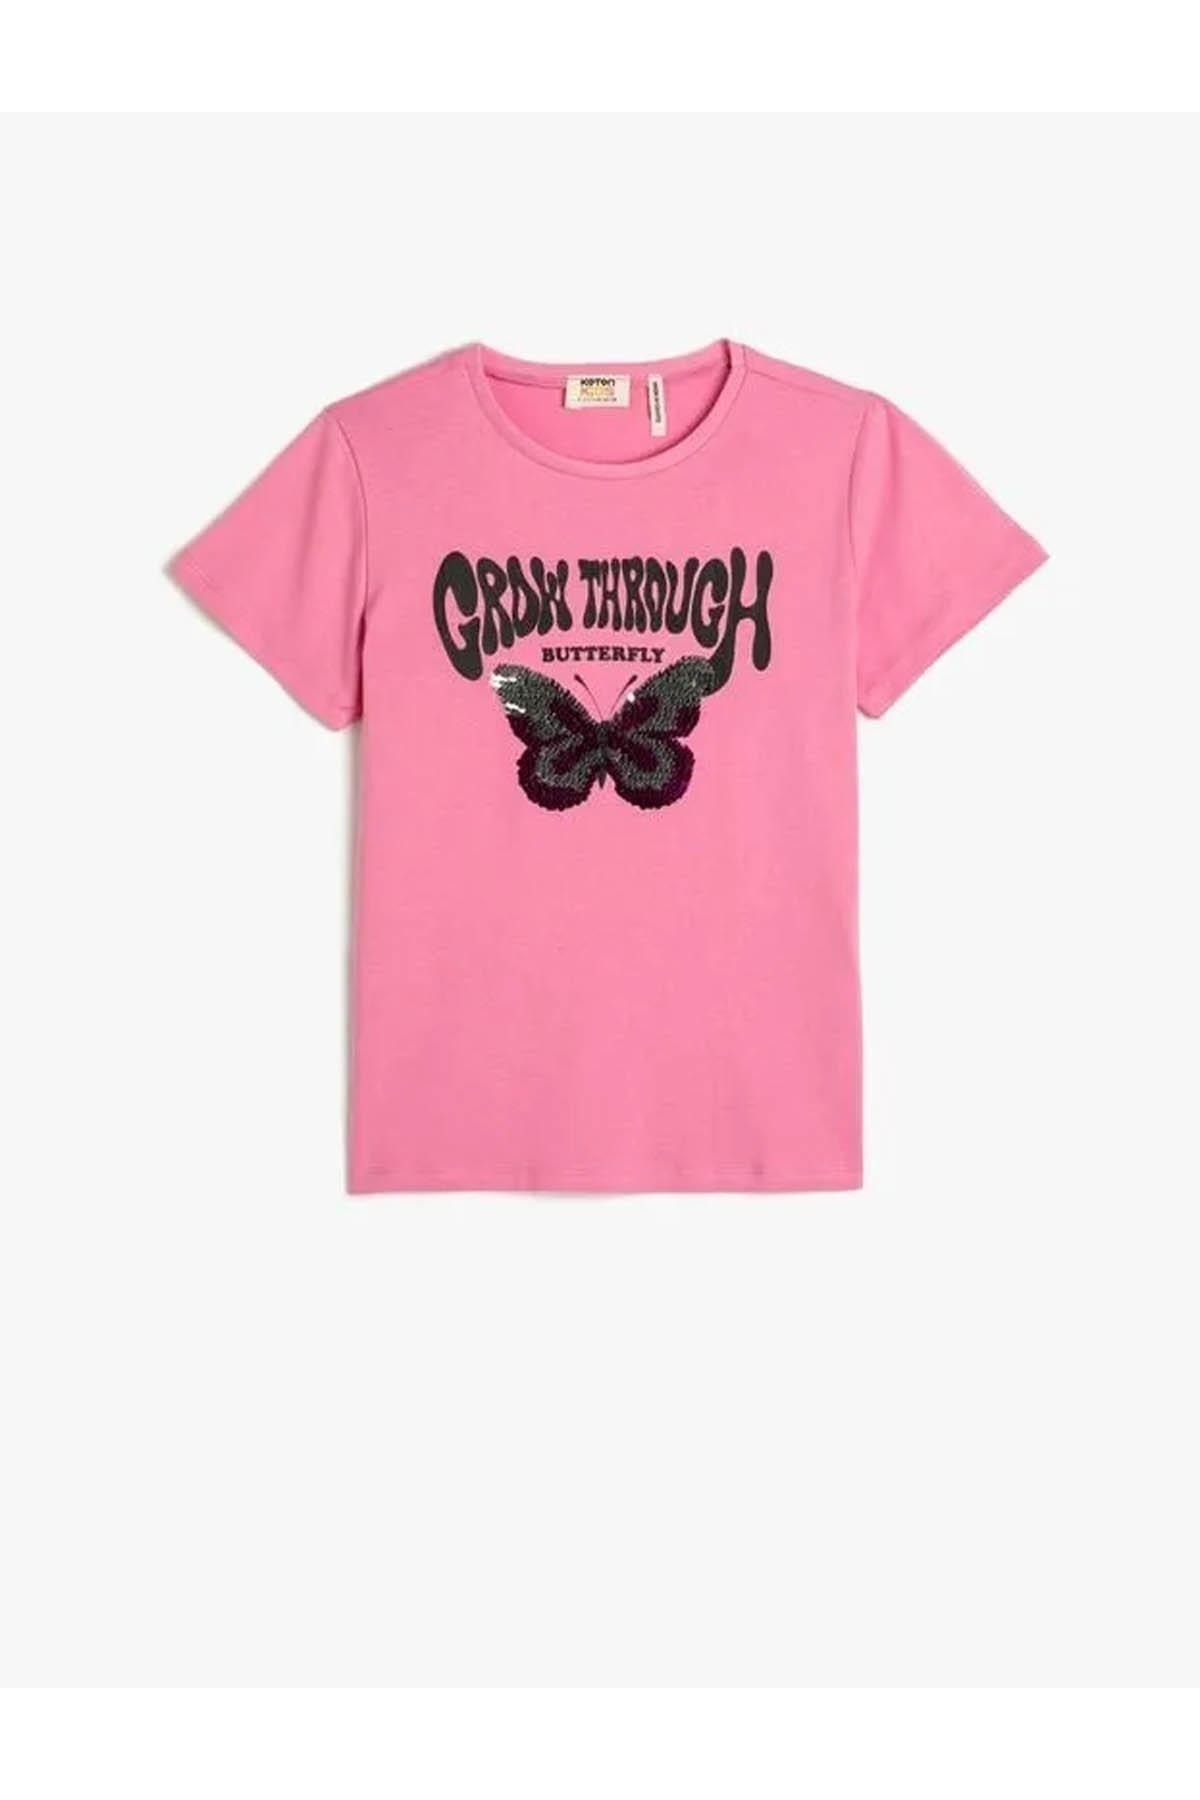 Koton Girls' T-shirt Pink 3skg10252ak